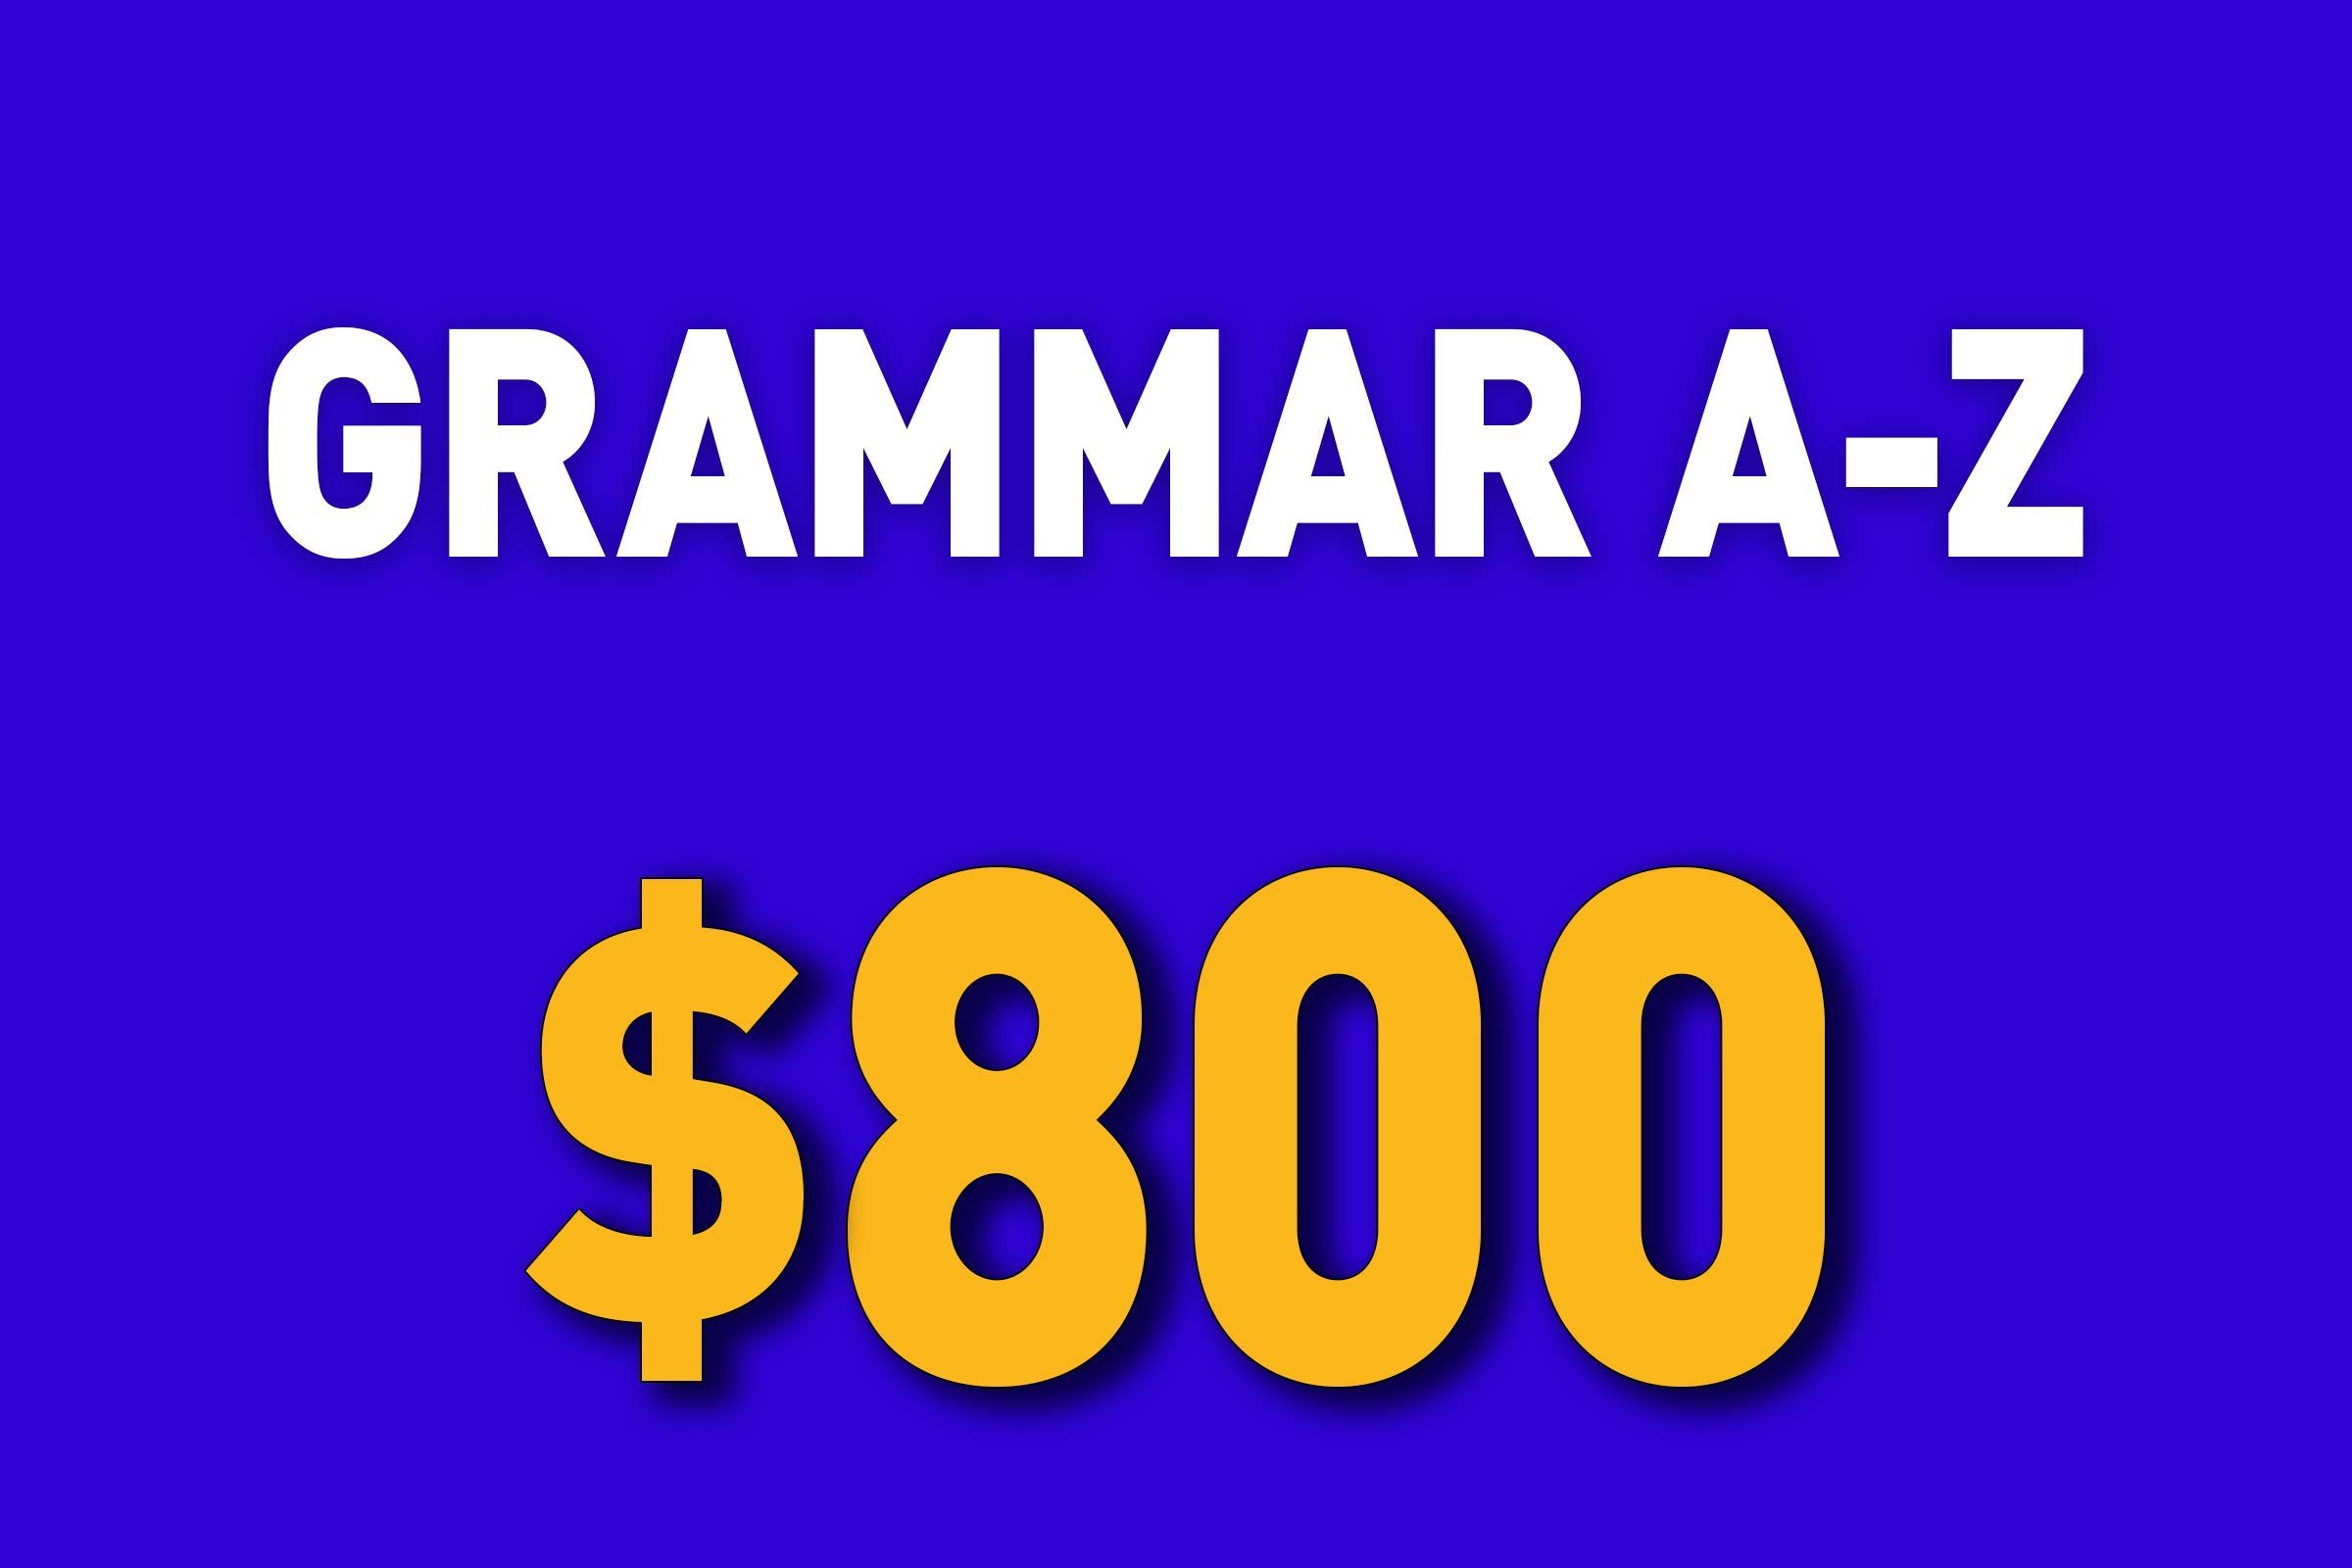 Grammar A-Z for $800